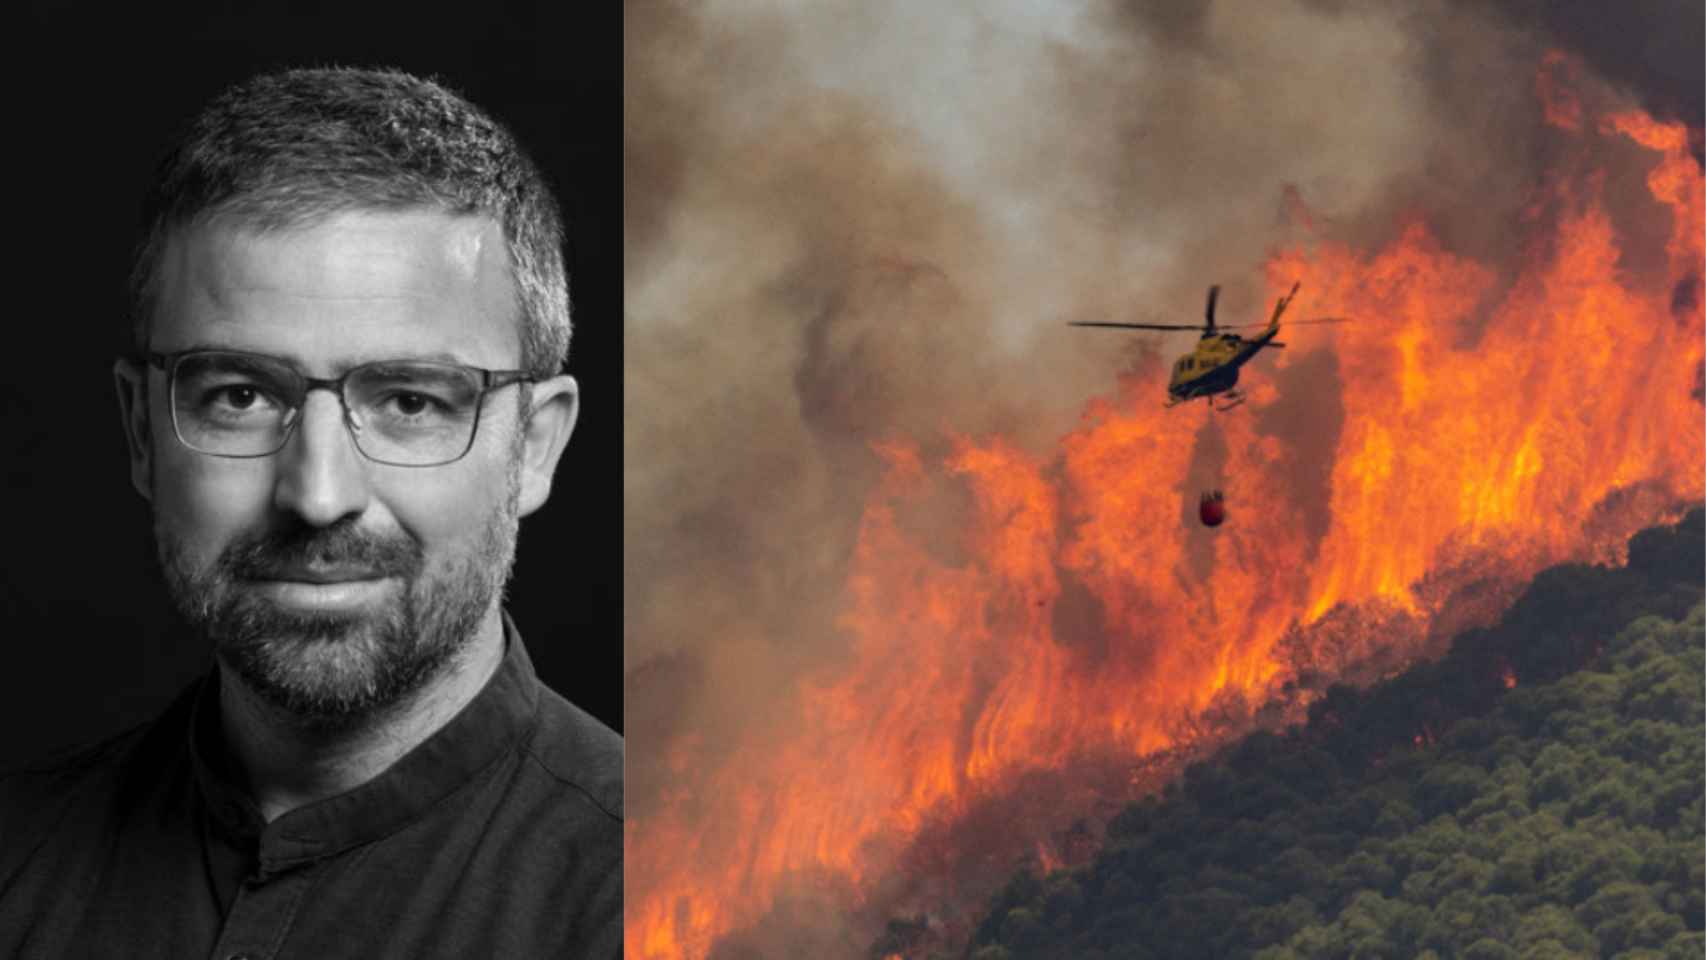 El fotógrafo Daniel Pérez, Premio Andalucía de Periodismo con una imagen del incendio de la Sierra de Mijas, el pasado mes de julio.